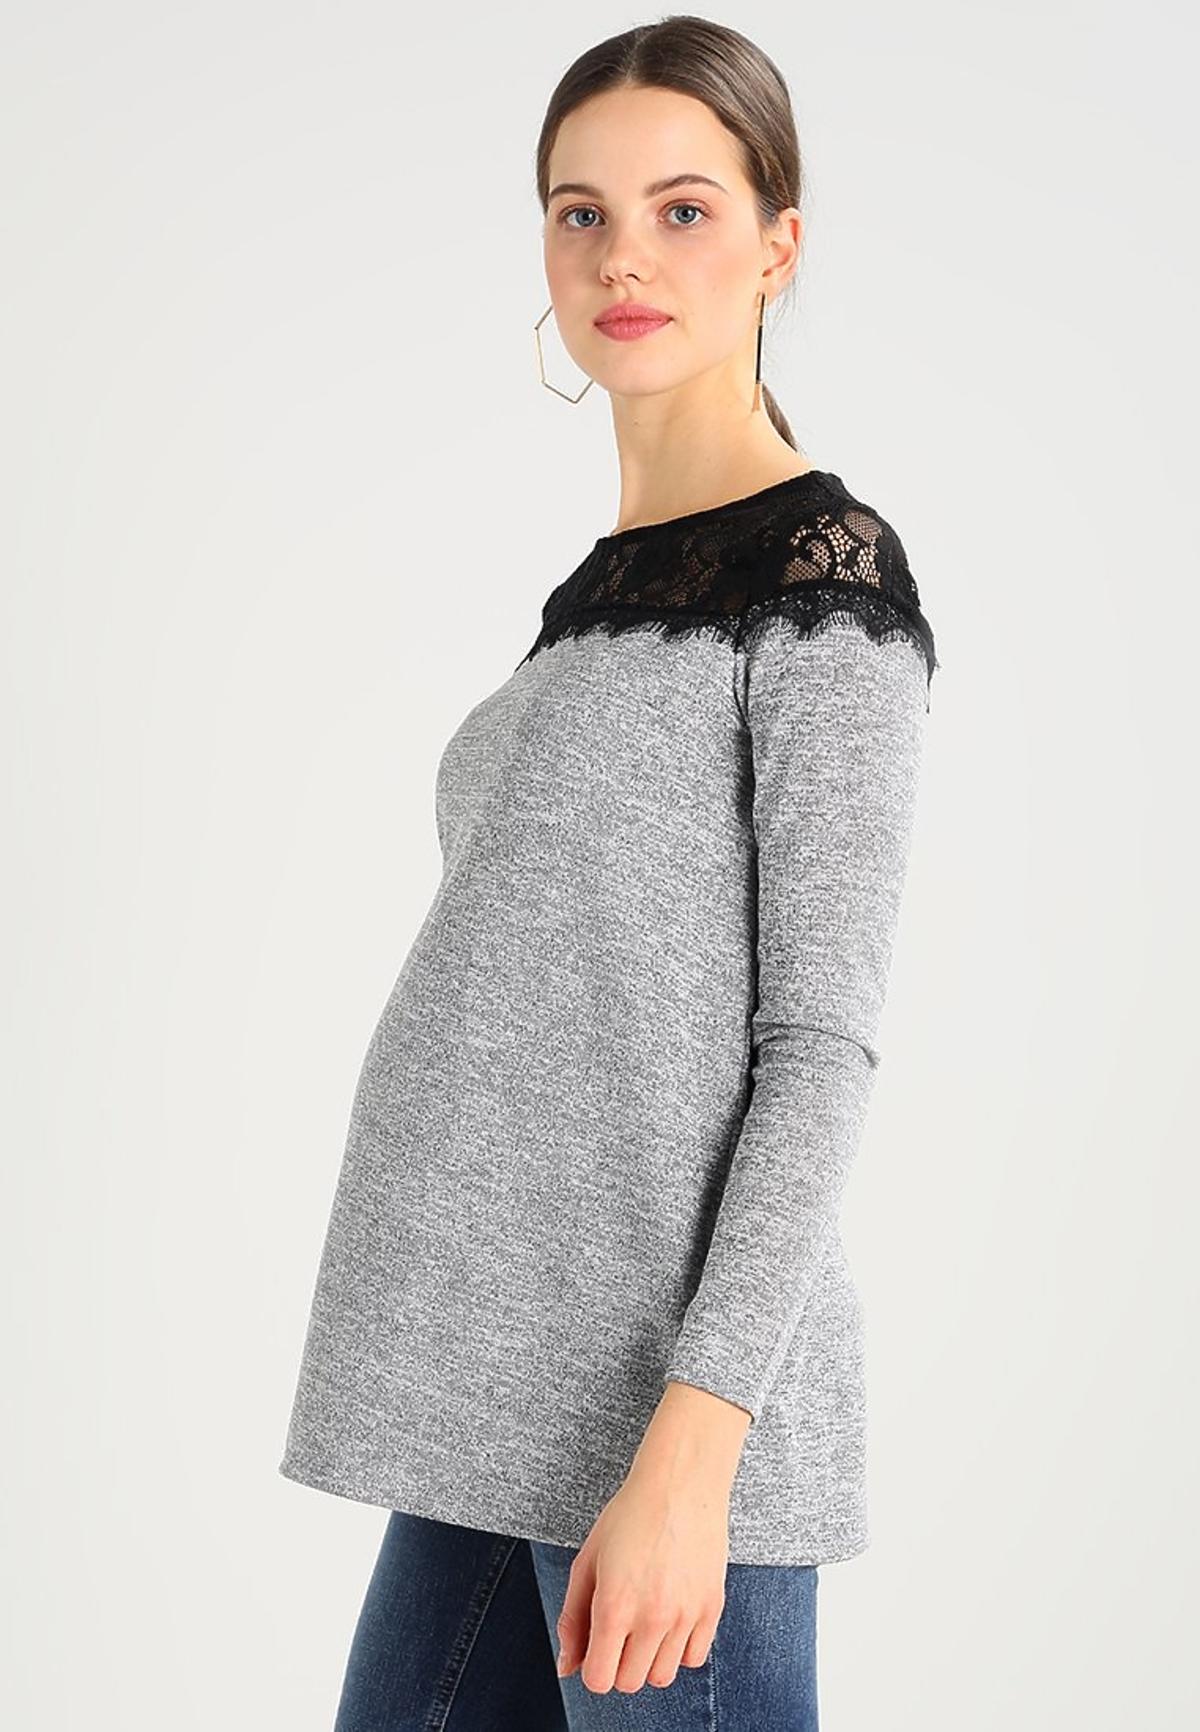 szary sweterek ciążowy z koronkową wstawka na ramionach.jpg